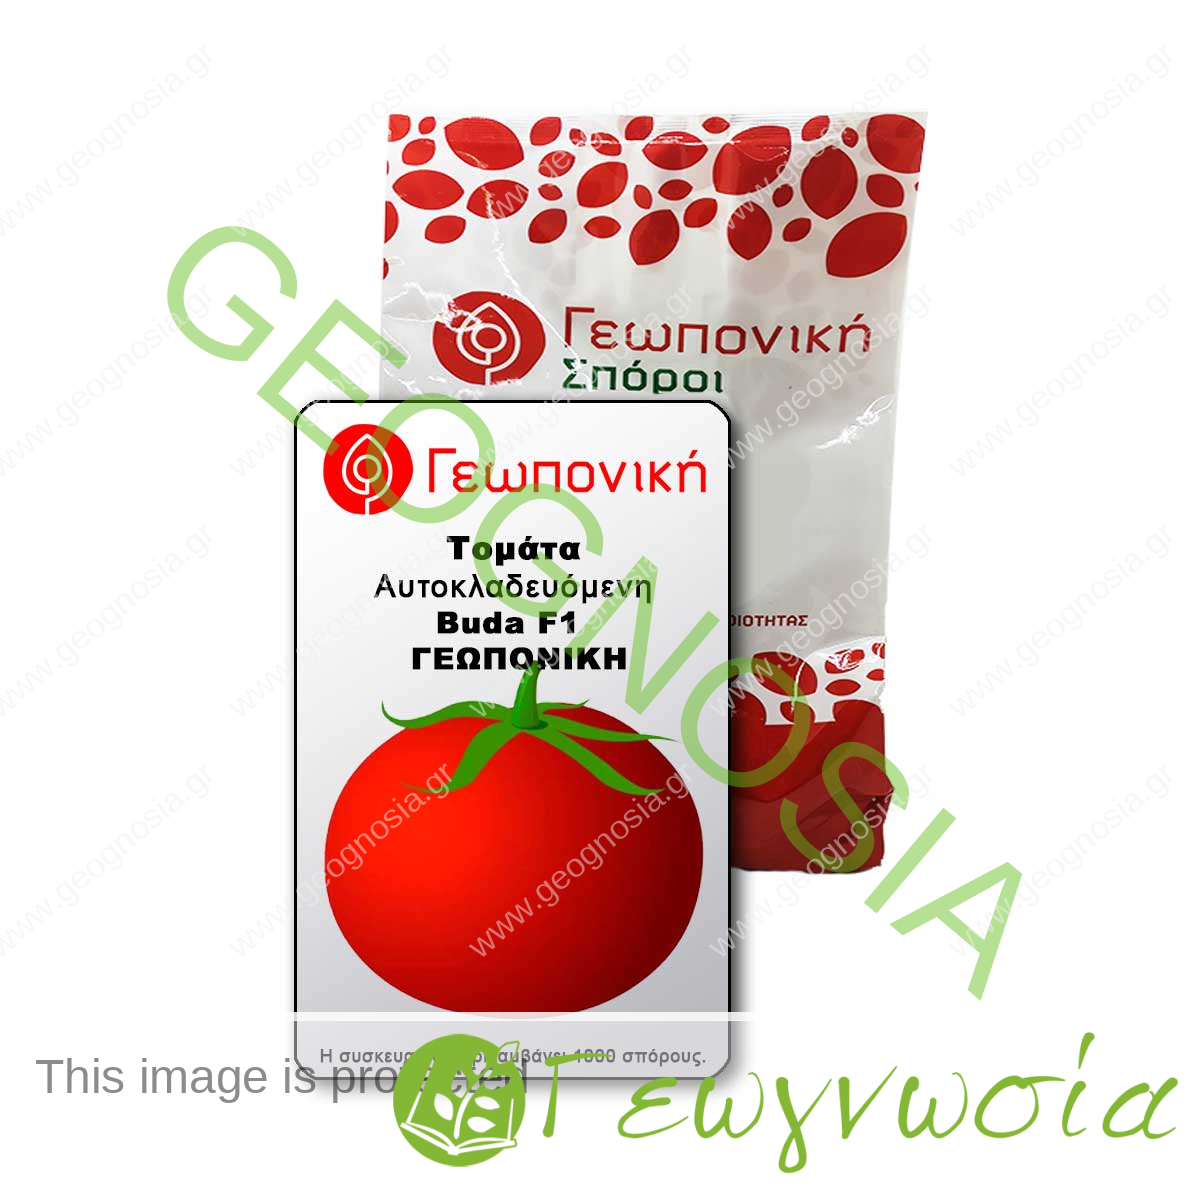 sporoi-tomatas-buda-f1-geoponiki